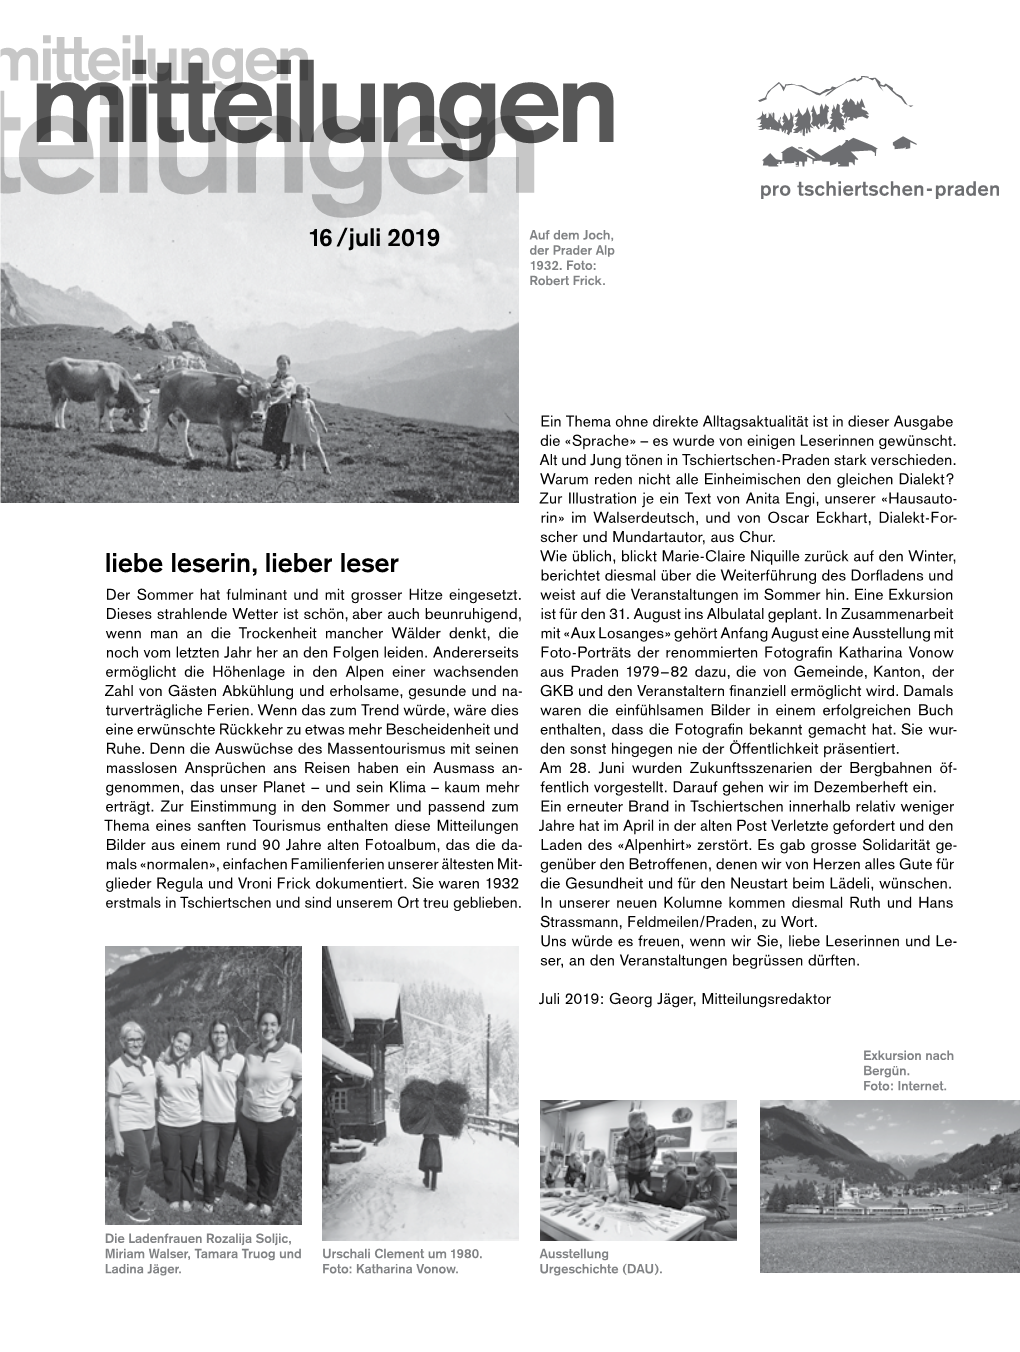 Mitteilungenmitteilungen Mitteilungen Pro Tschiertschen-Praden Auf Dem Joch, 16/Juli 2019 Der Prader Alp 1932